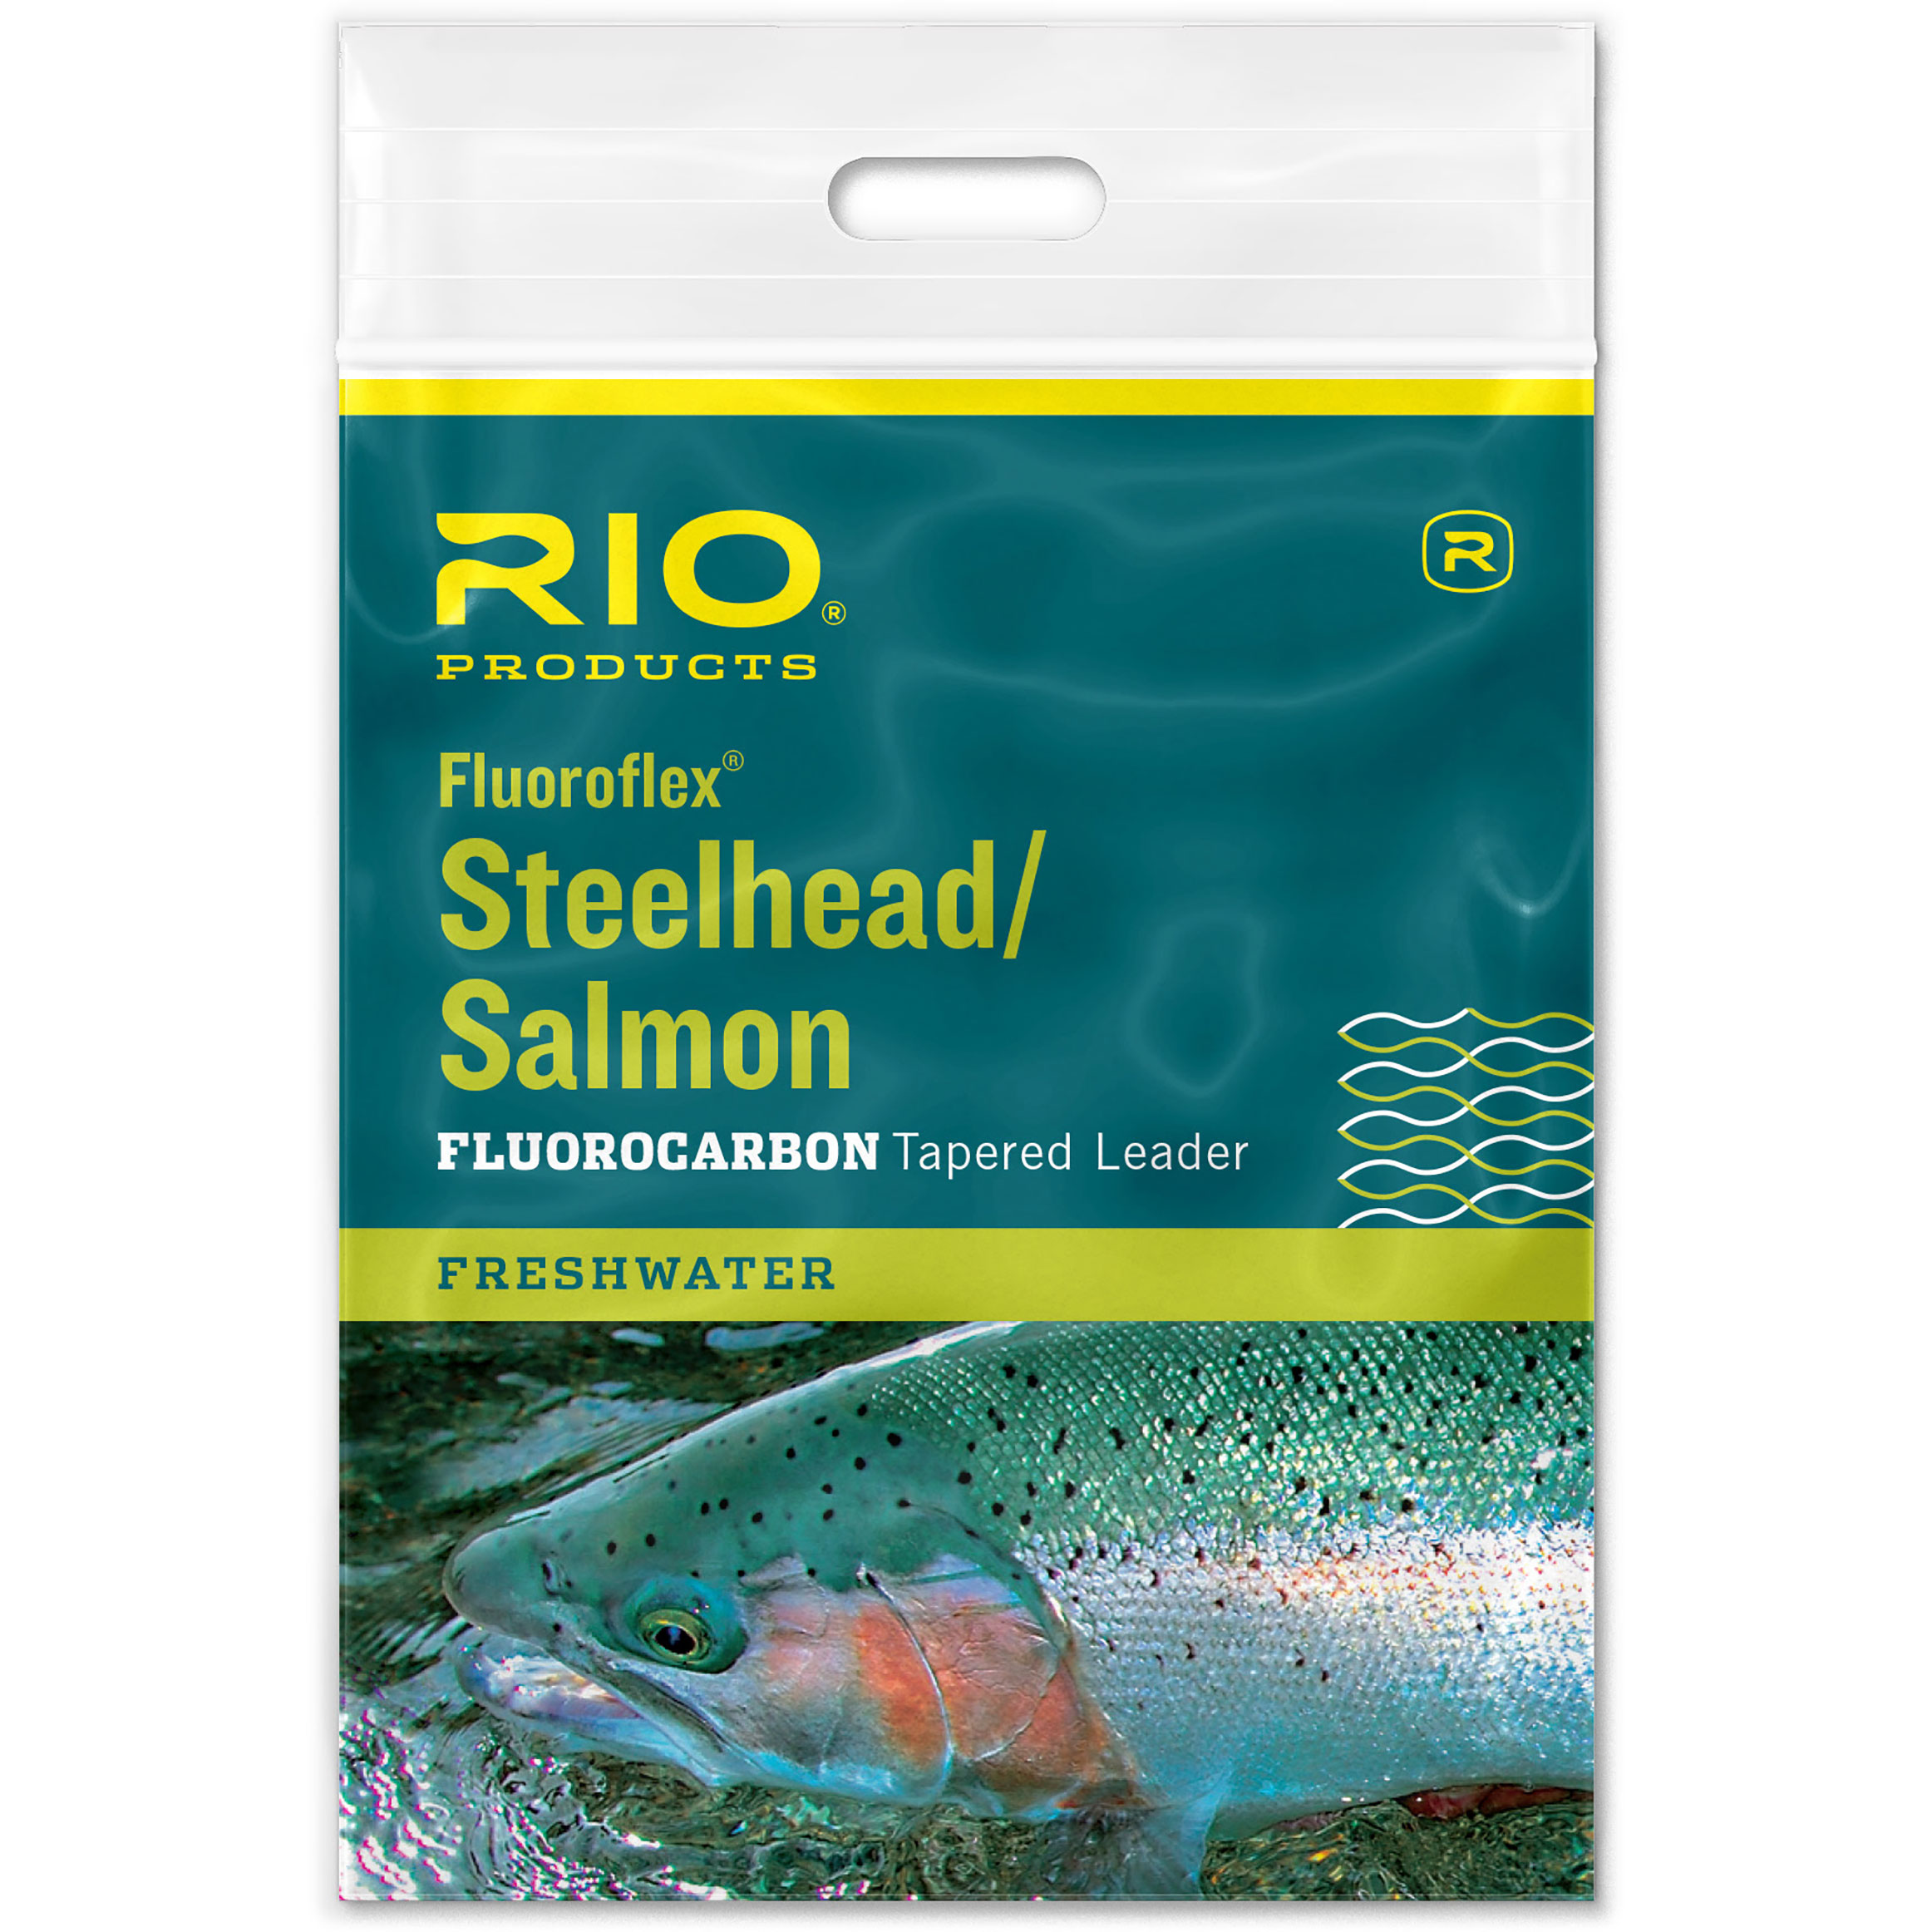 RIO Fluoroflex Steelhead/Salmon Fluorocarbon Tapered Leader - FishUSA